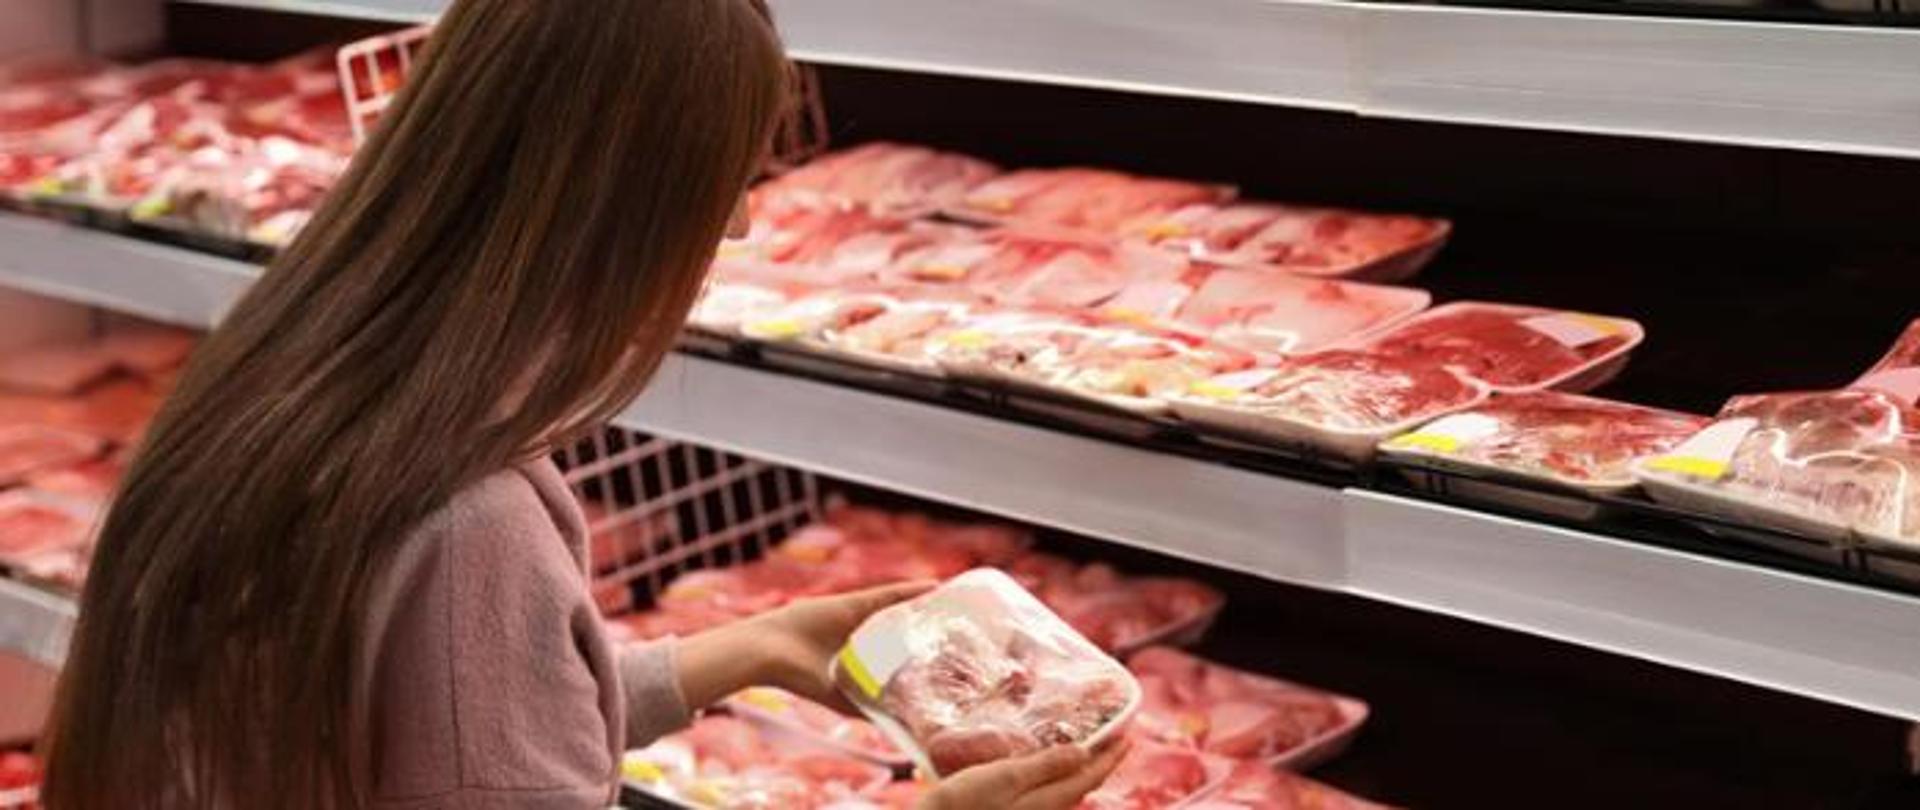 kobieta stoi przodem do półek z mięsem w sklepie i wybiera opakowanie mięsa do zakupu